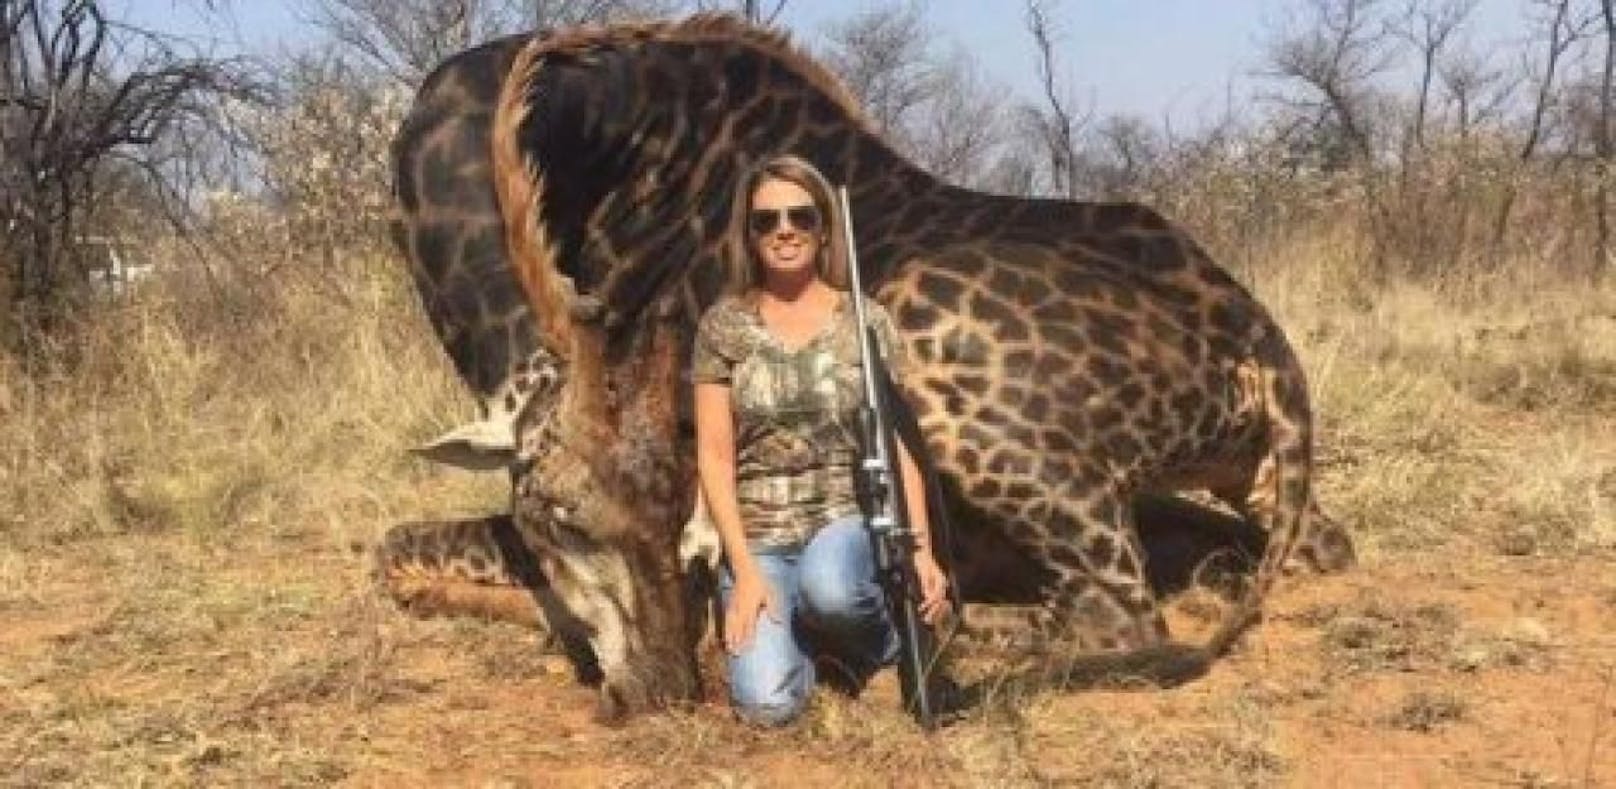 Die Jägerin Tess Thompson hat in Afrika eine schwarze Giraffe erlegt.